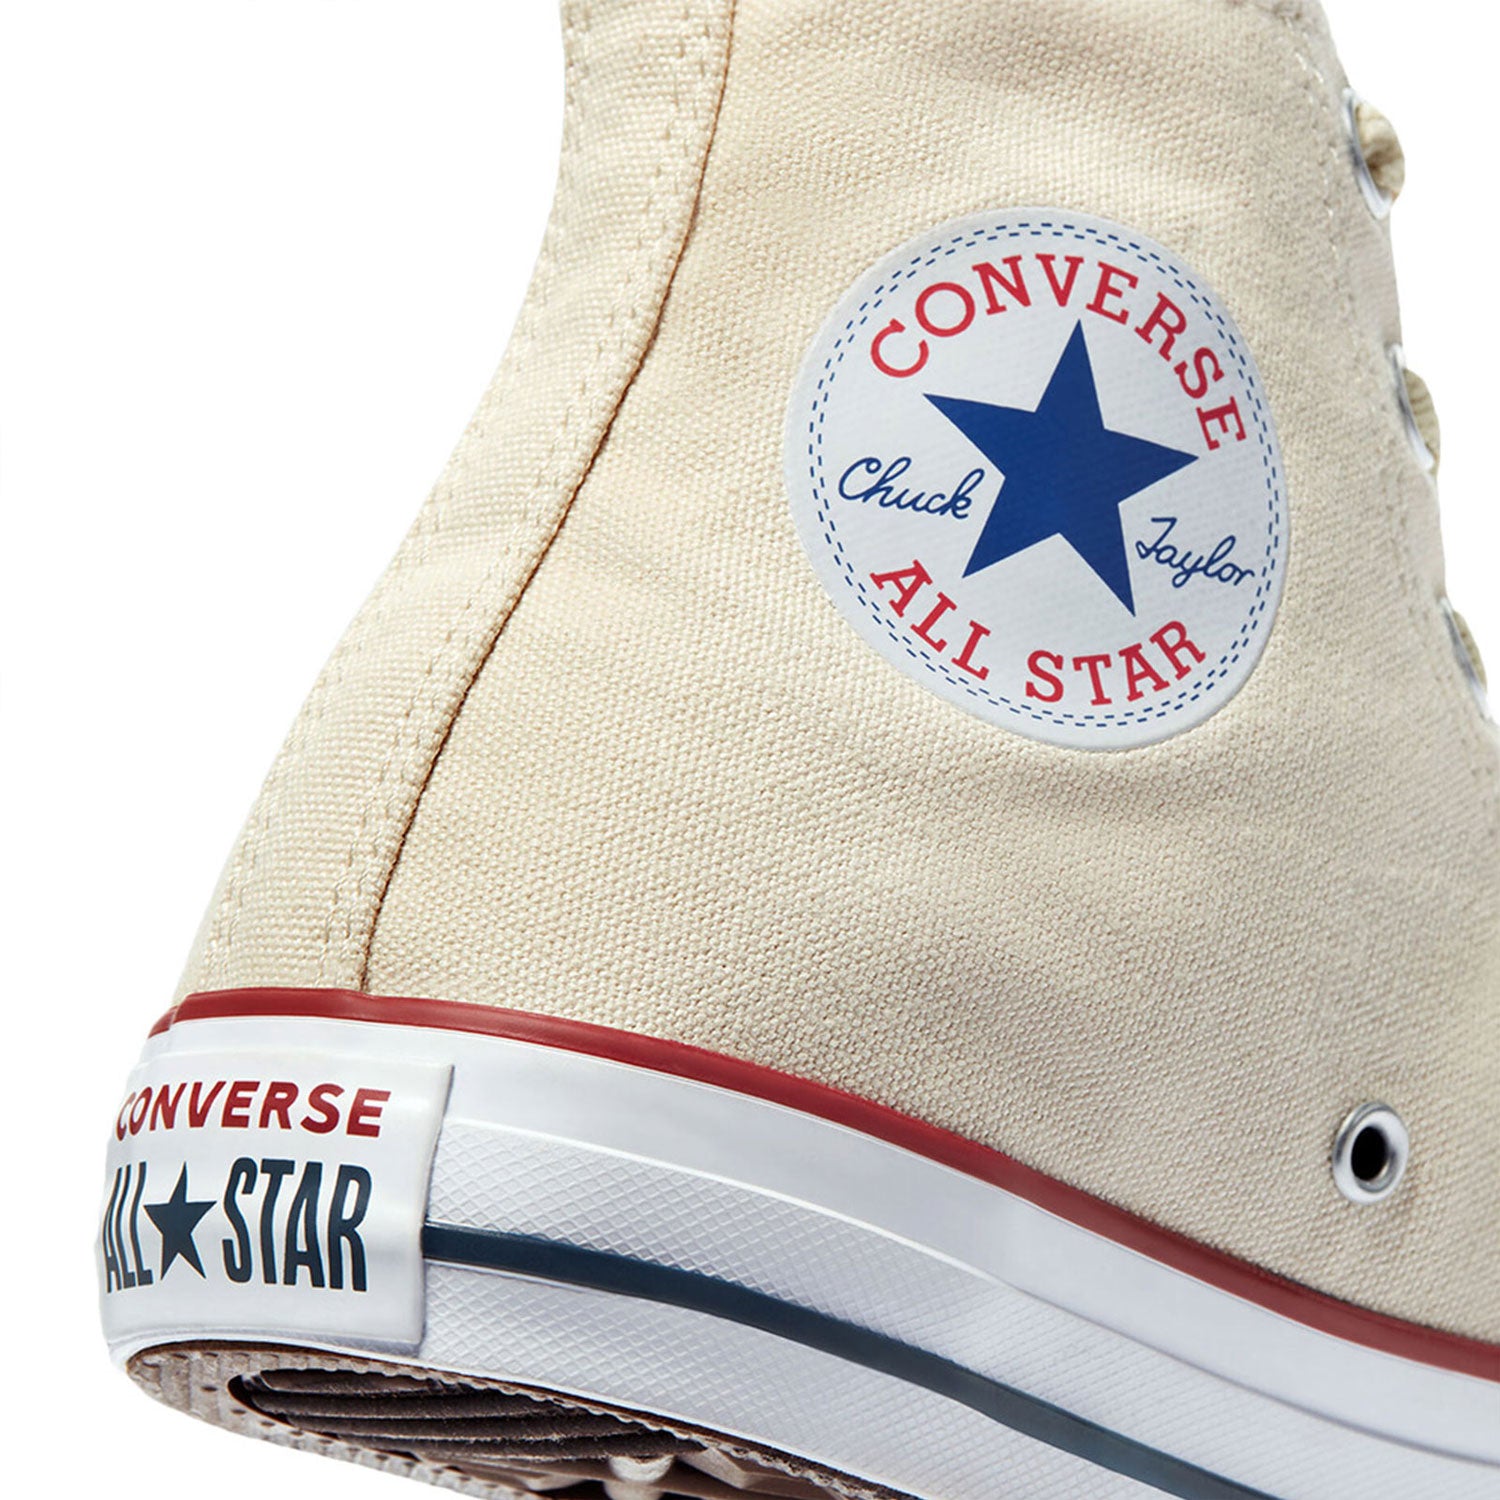 אולסטאר סניקרס גבוהות בצבע שמנת נשים וגברים-Converse All Star-35-נאקו